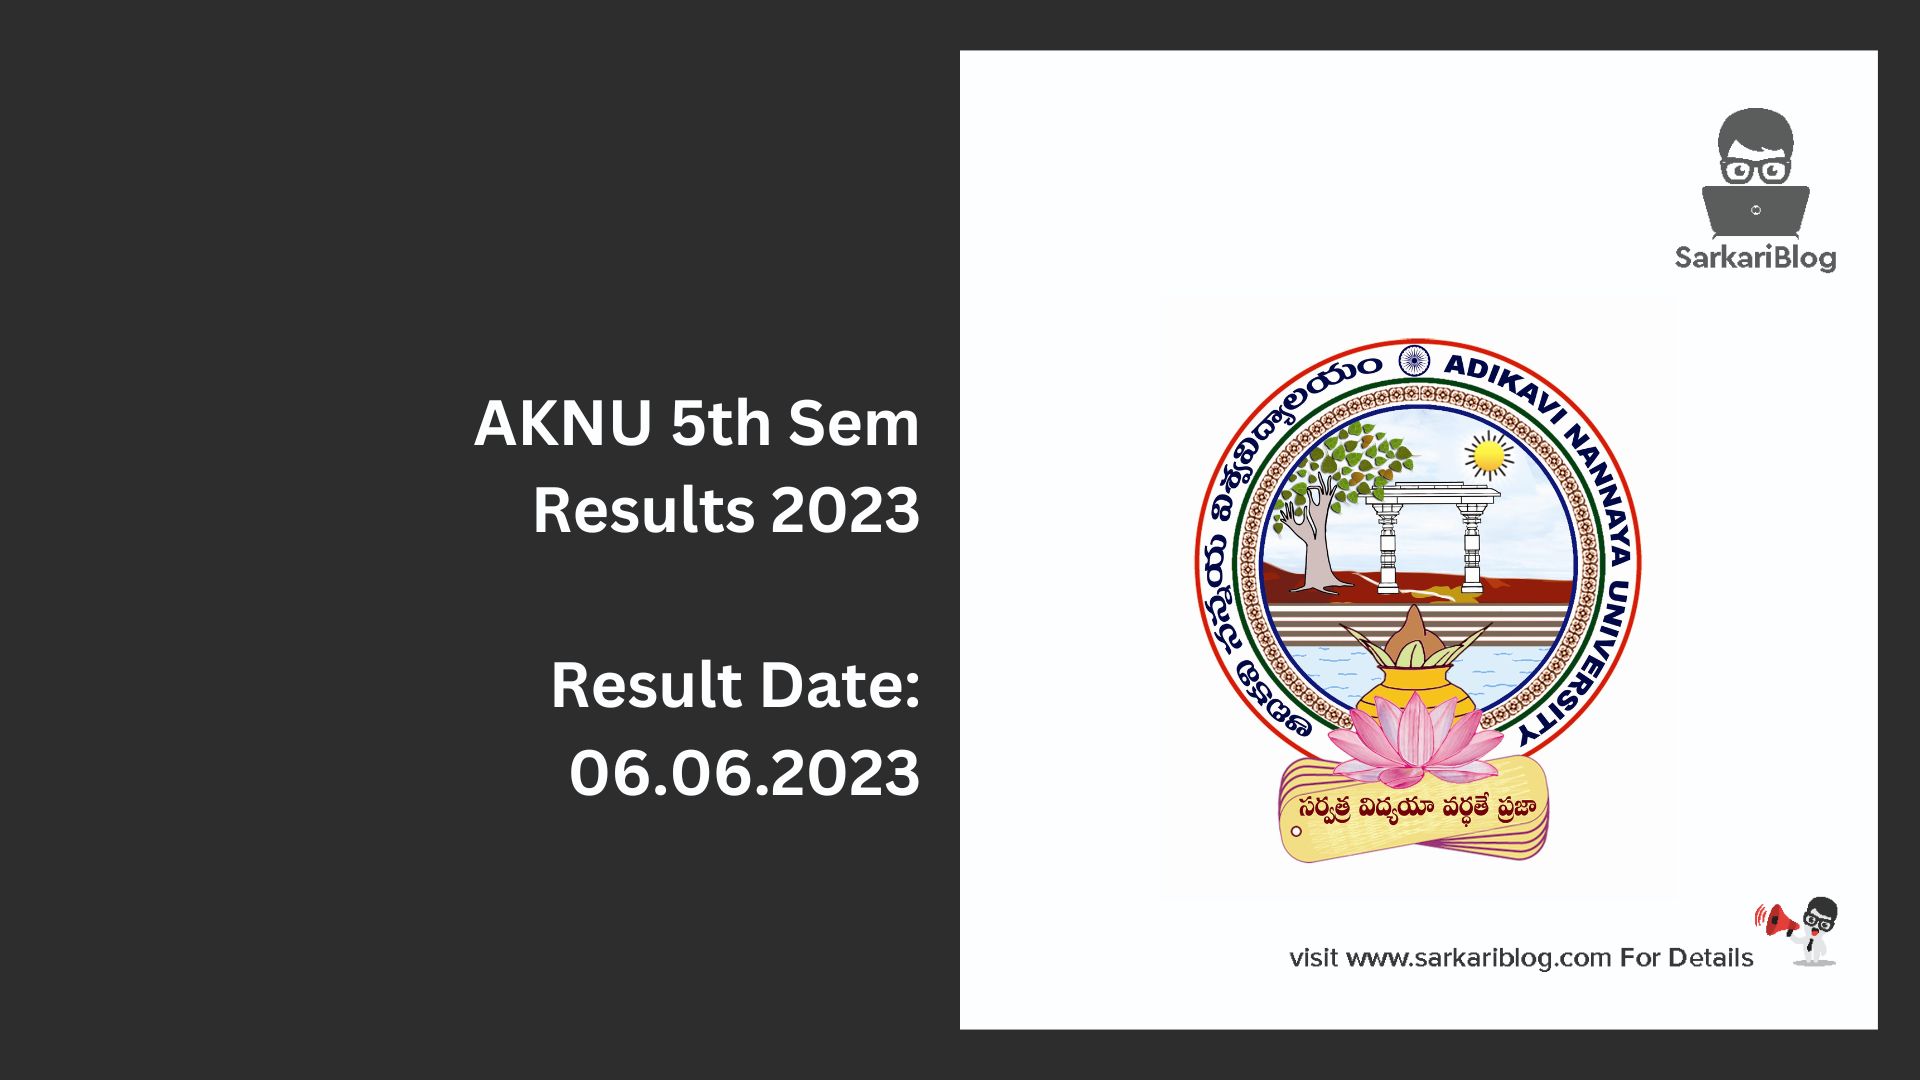 AKNU 5th Sem Results 2023